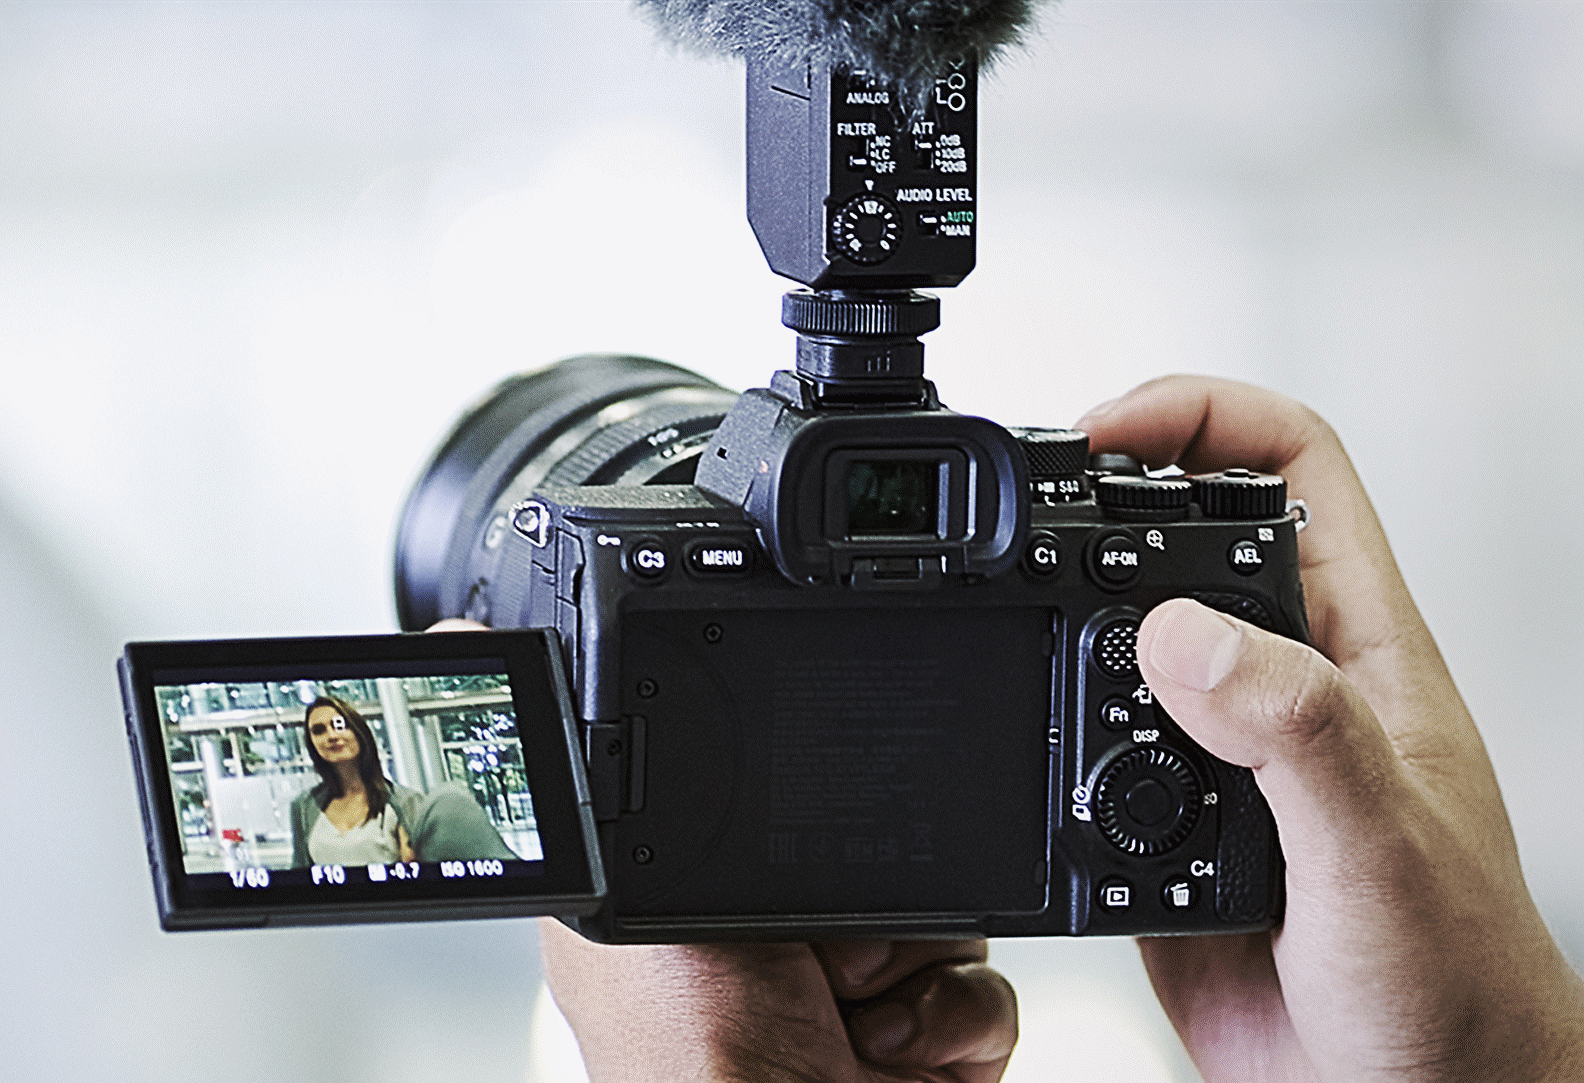 ภาพถ่ายของผู้สร้างวิดีโอที่ถ่ายด้วยระบบป้องกันภาพสั่นไหว Active Mode ในตัวกล้อง โดยที่ไม่มีอุปกรณ์อื่นนอกจากกล้อง